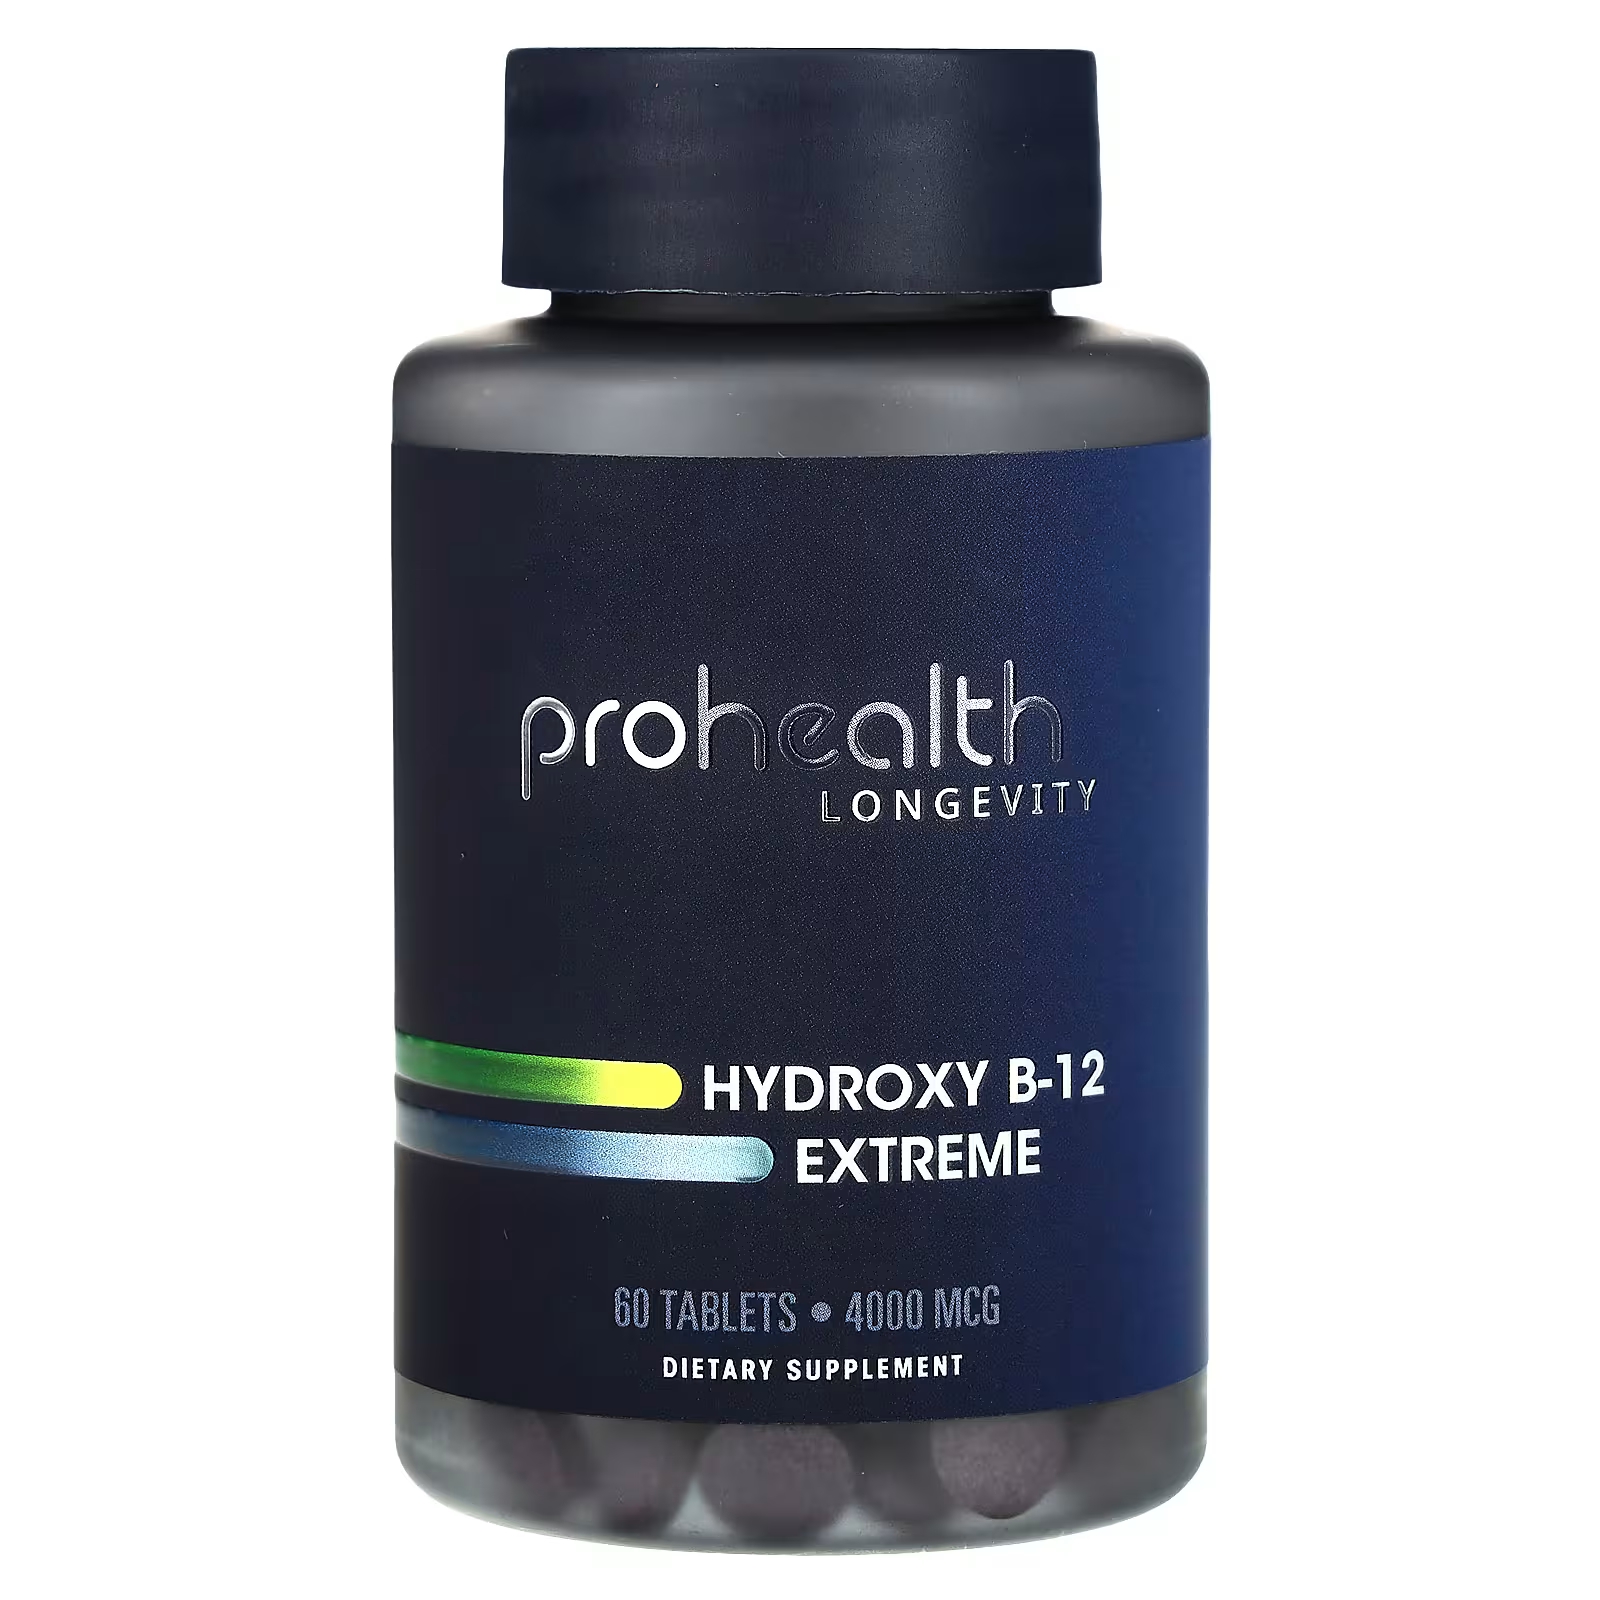 ProHealth Longevity Hydroxy B-12 Extreme 4000 мкг 60 таблеток prohealth longevity hydroxy b 12 extreme 4000 мкг 60 таблеток